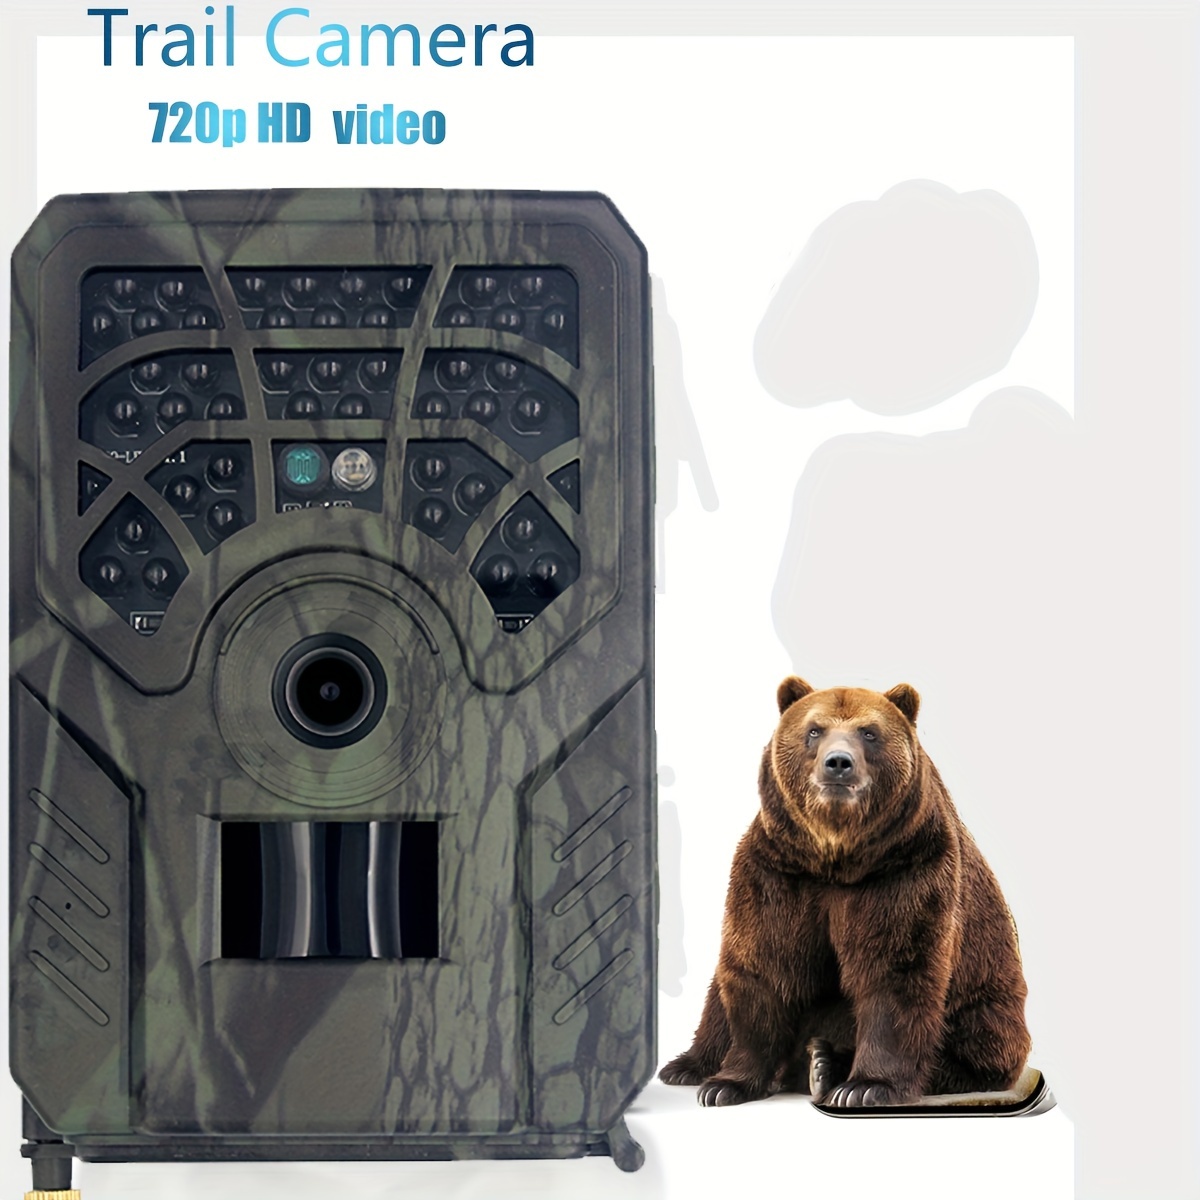 Cámara de rastreo de 36MP 4K, cámara de juego con visión nocturna, tiempo  de activación de 0.2 s, cámaras de caza impermeables con LCD de 2.0